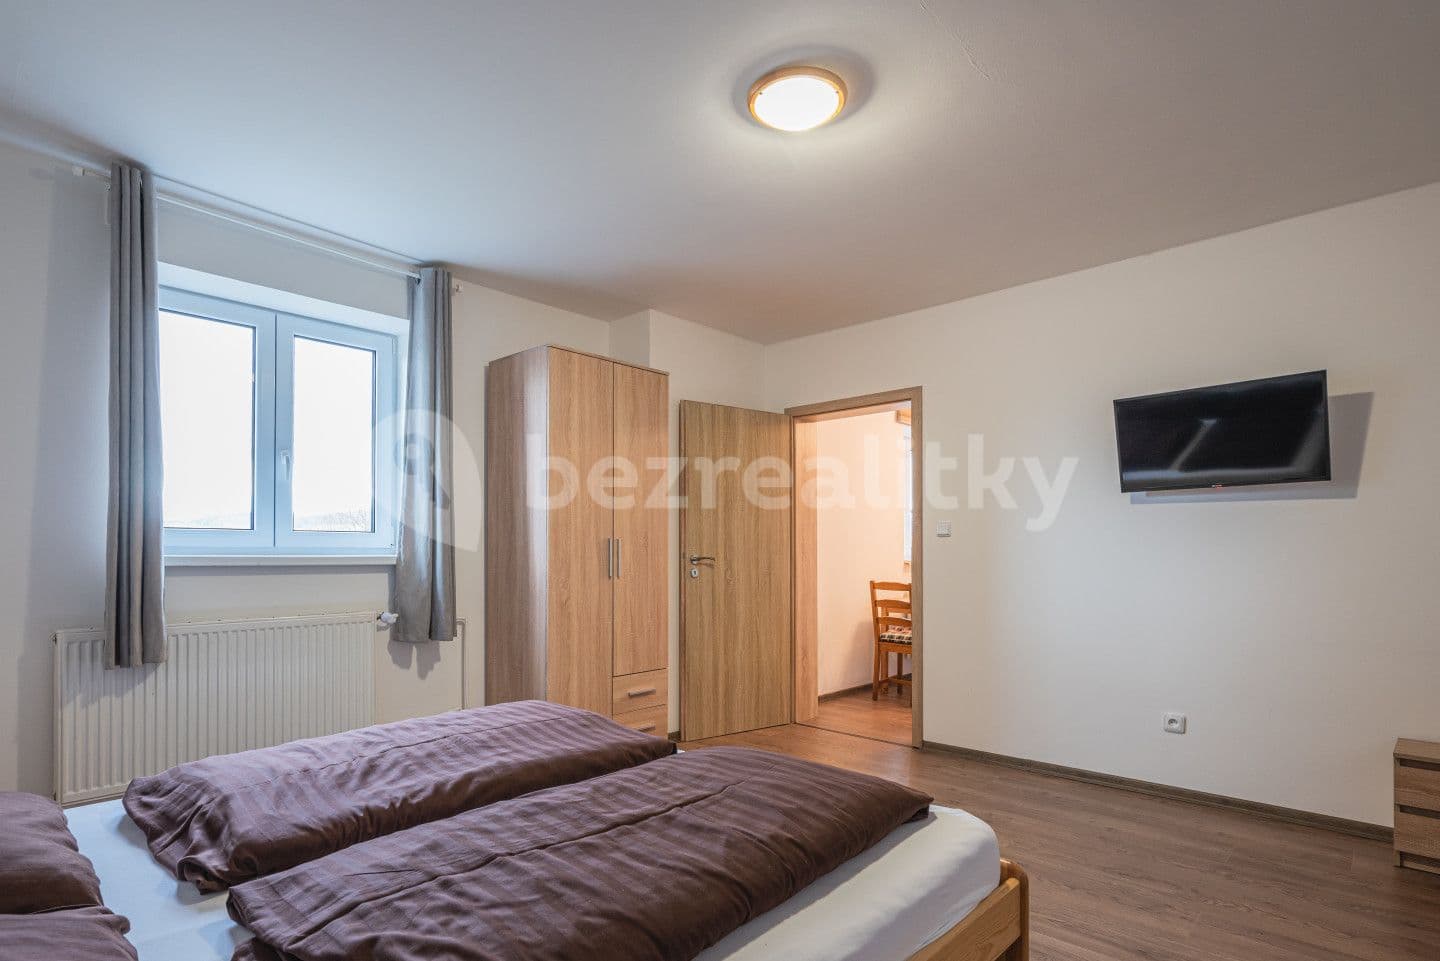 1 bedroom with open-plan kitchen flat for sale, 39 m², Staré Město, Moravskoslezský Region